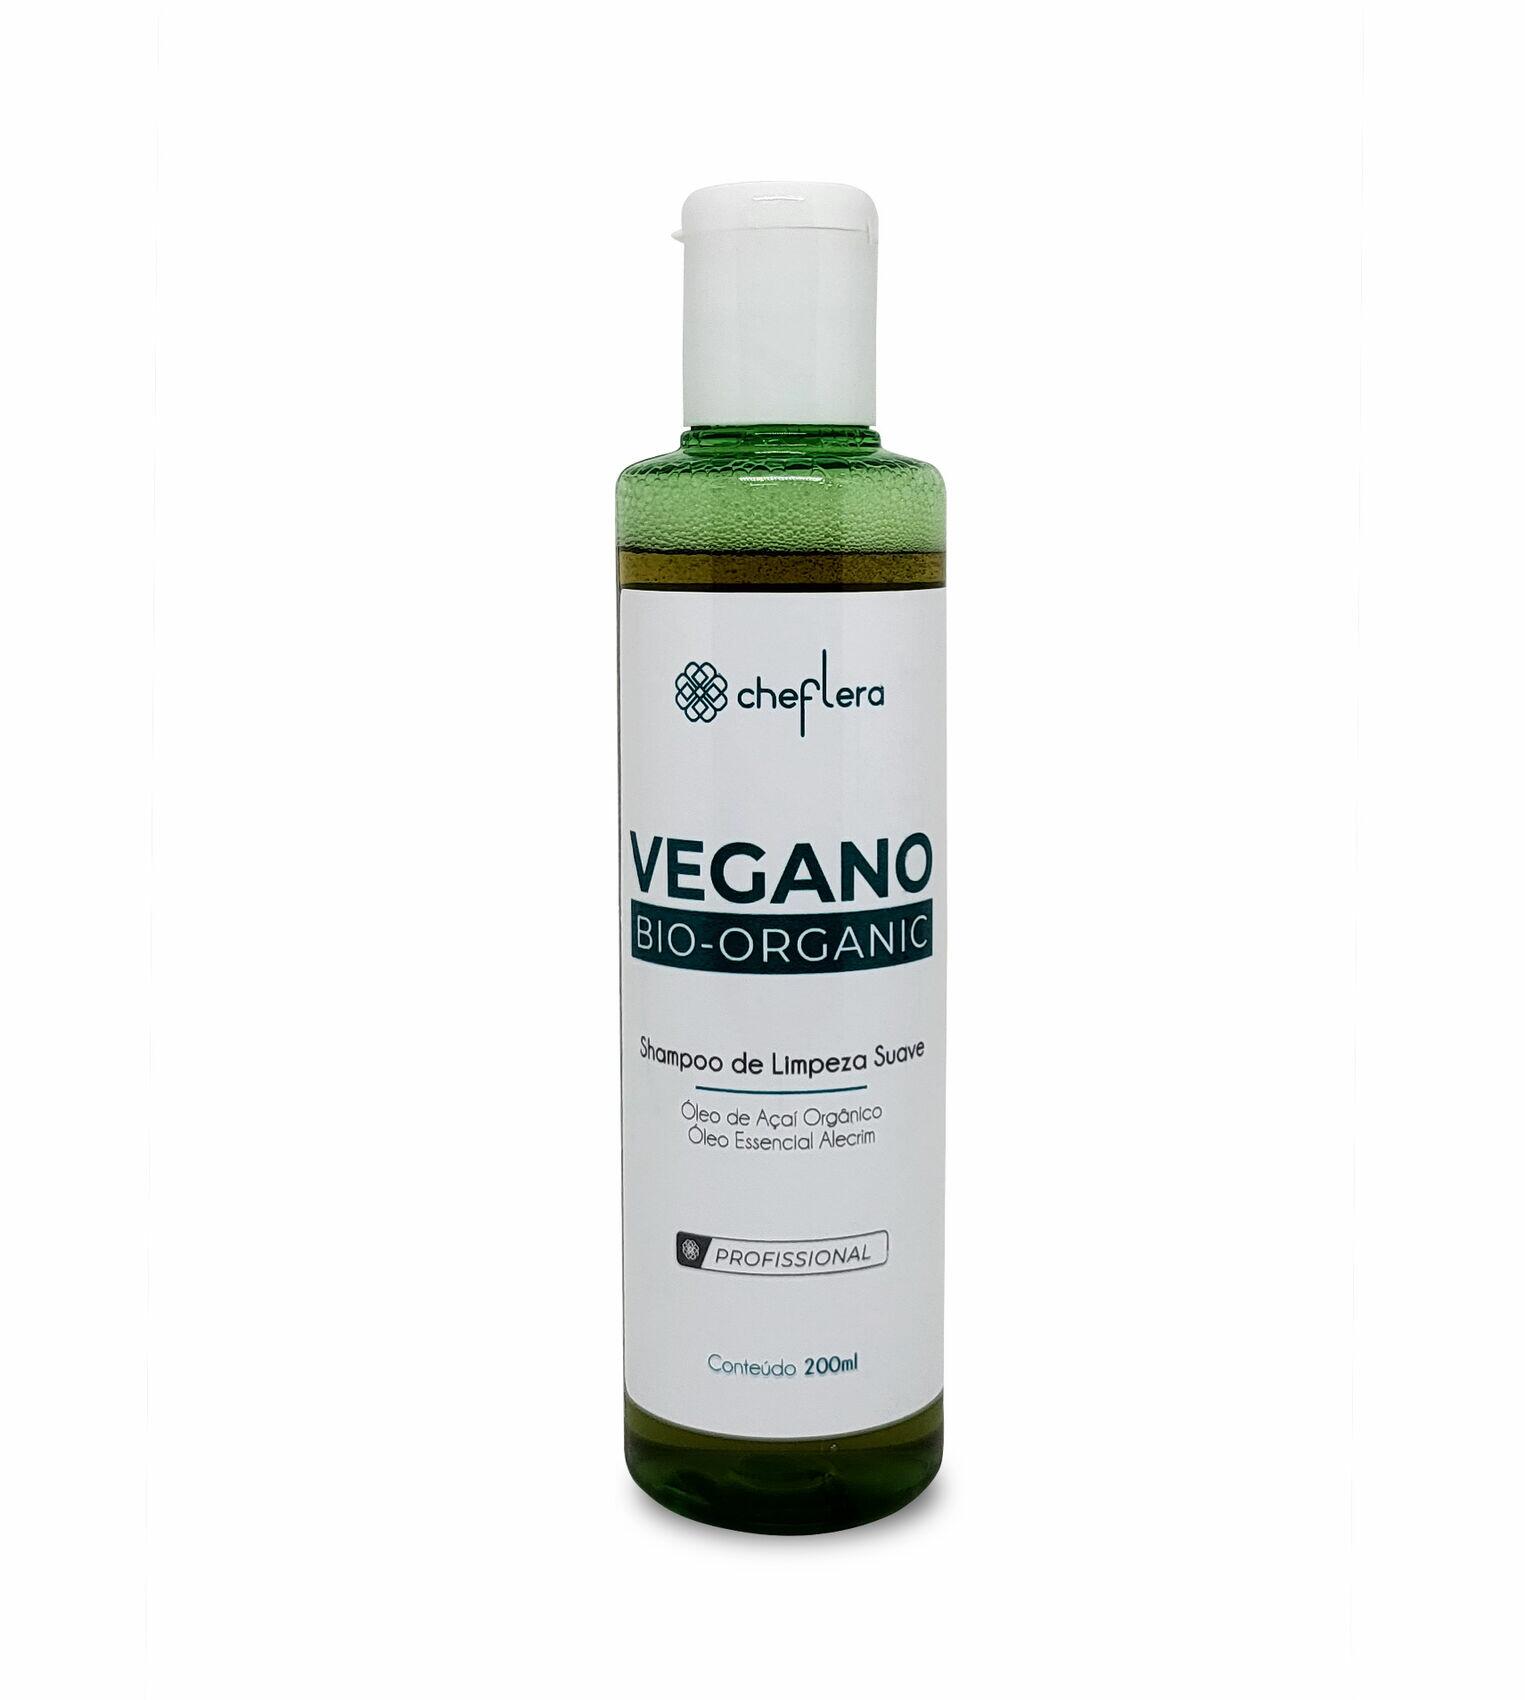 https://cdn.sistemawbuy.com.br/arquivos/5dfe337893def203f8553bf891097385/produtos/FAE9DUA1/vegano-bio-organic_shampoo-de-limpeza-suave-frente-61a4ffc8da331.jpg